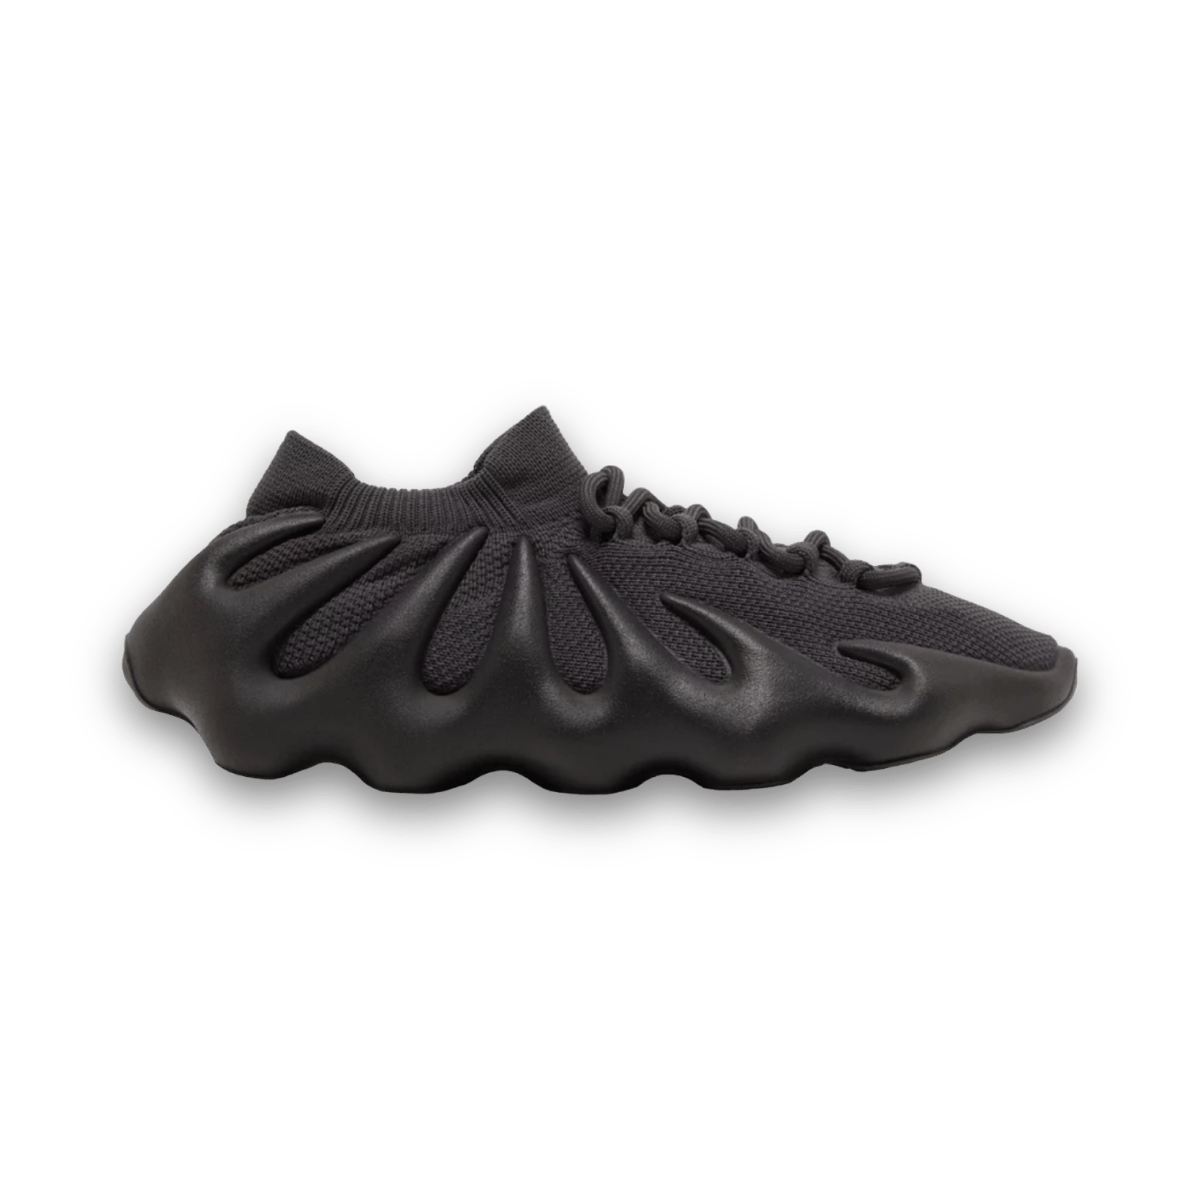 Yeezy 450 'Utility Black' - Low Sneaker - Jawns on Fire Sneakers & Streetwear